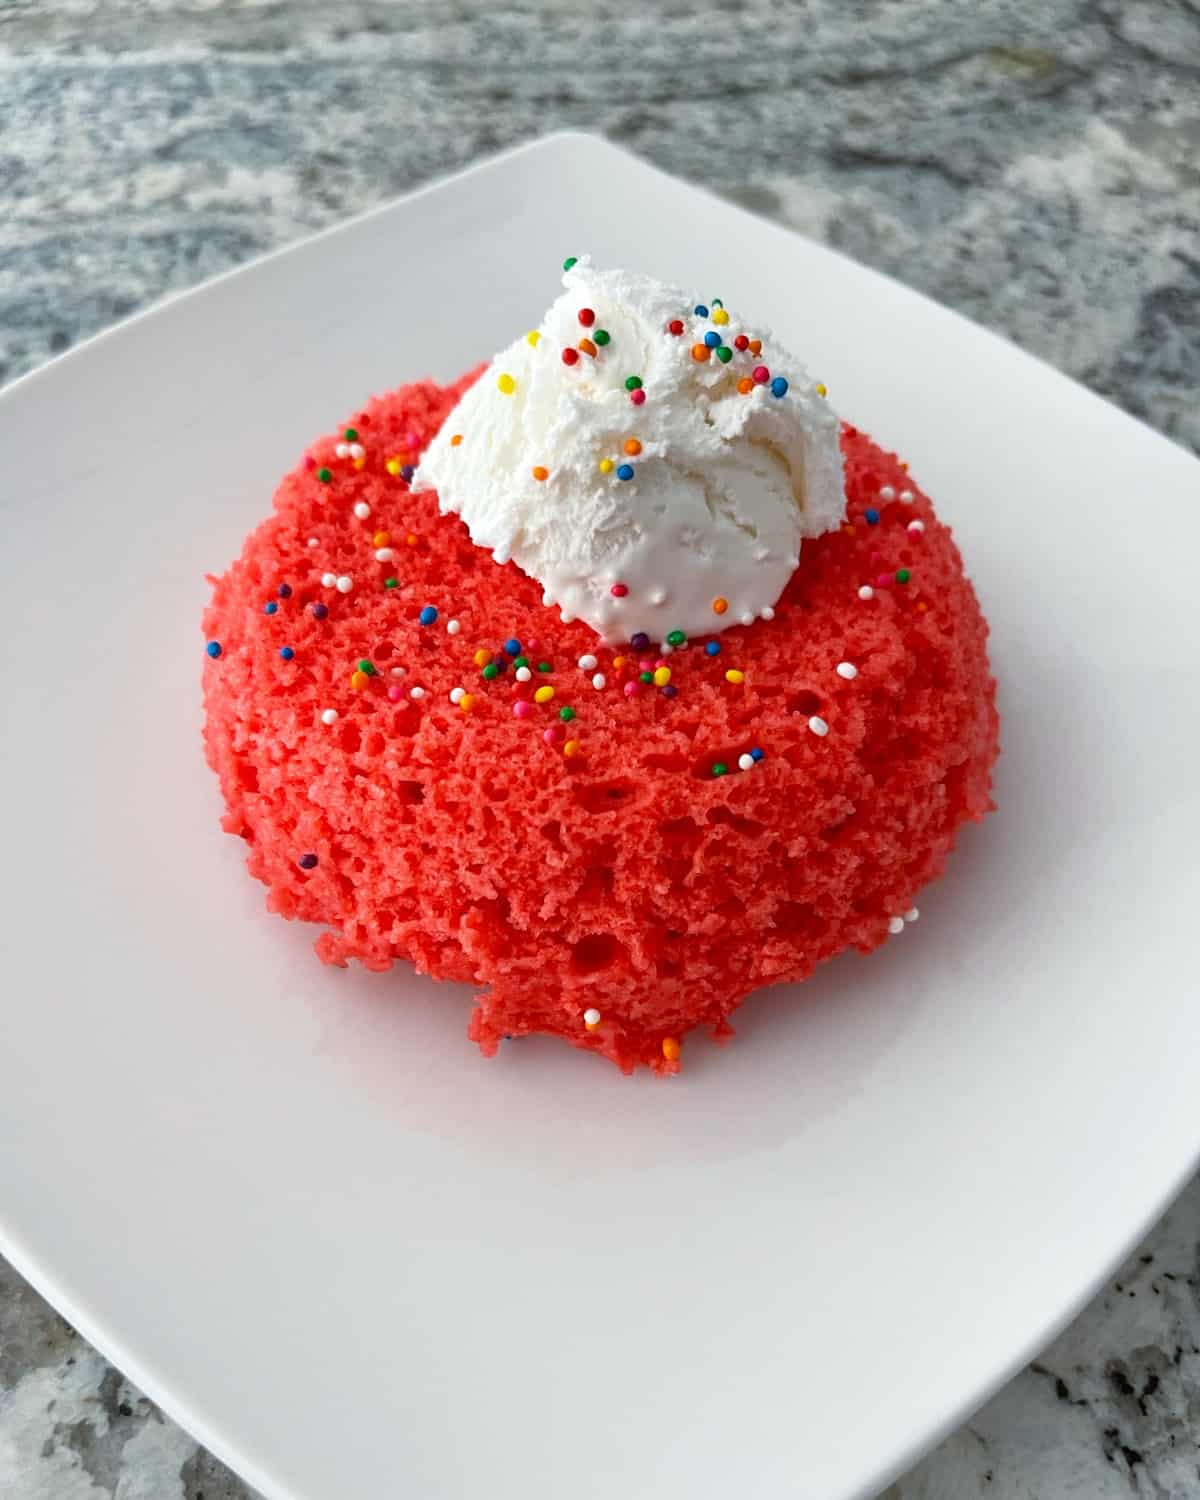 Κέικ με κούπα μικροκυμάτων Raspberry Jell-o με σαντιγί και πασπαλίζει ουράνιο τόξο στο λευκό πιάτο.